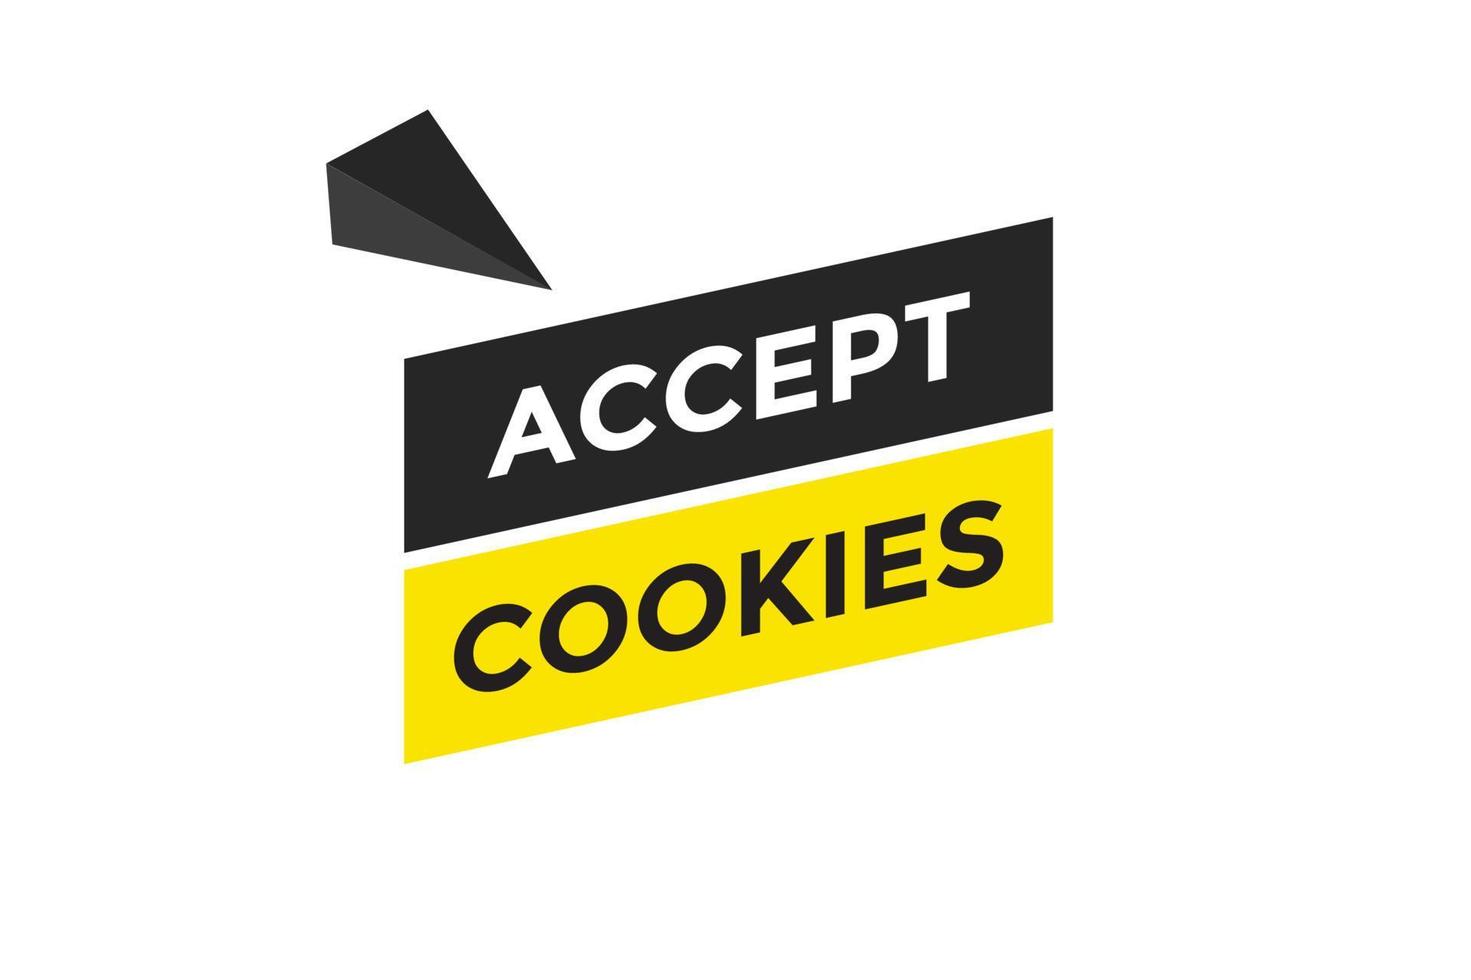 aanvaarden koekjes knop web banier Sjablonen. vector illustratie